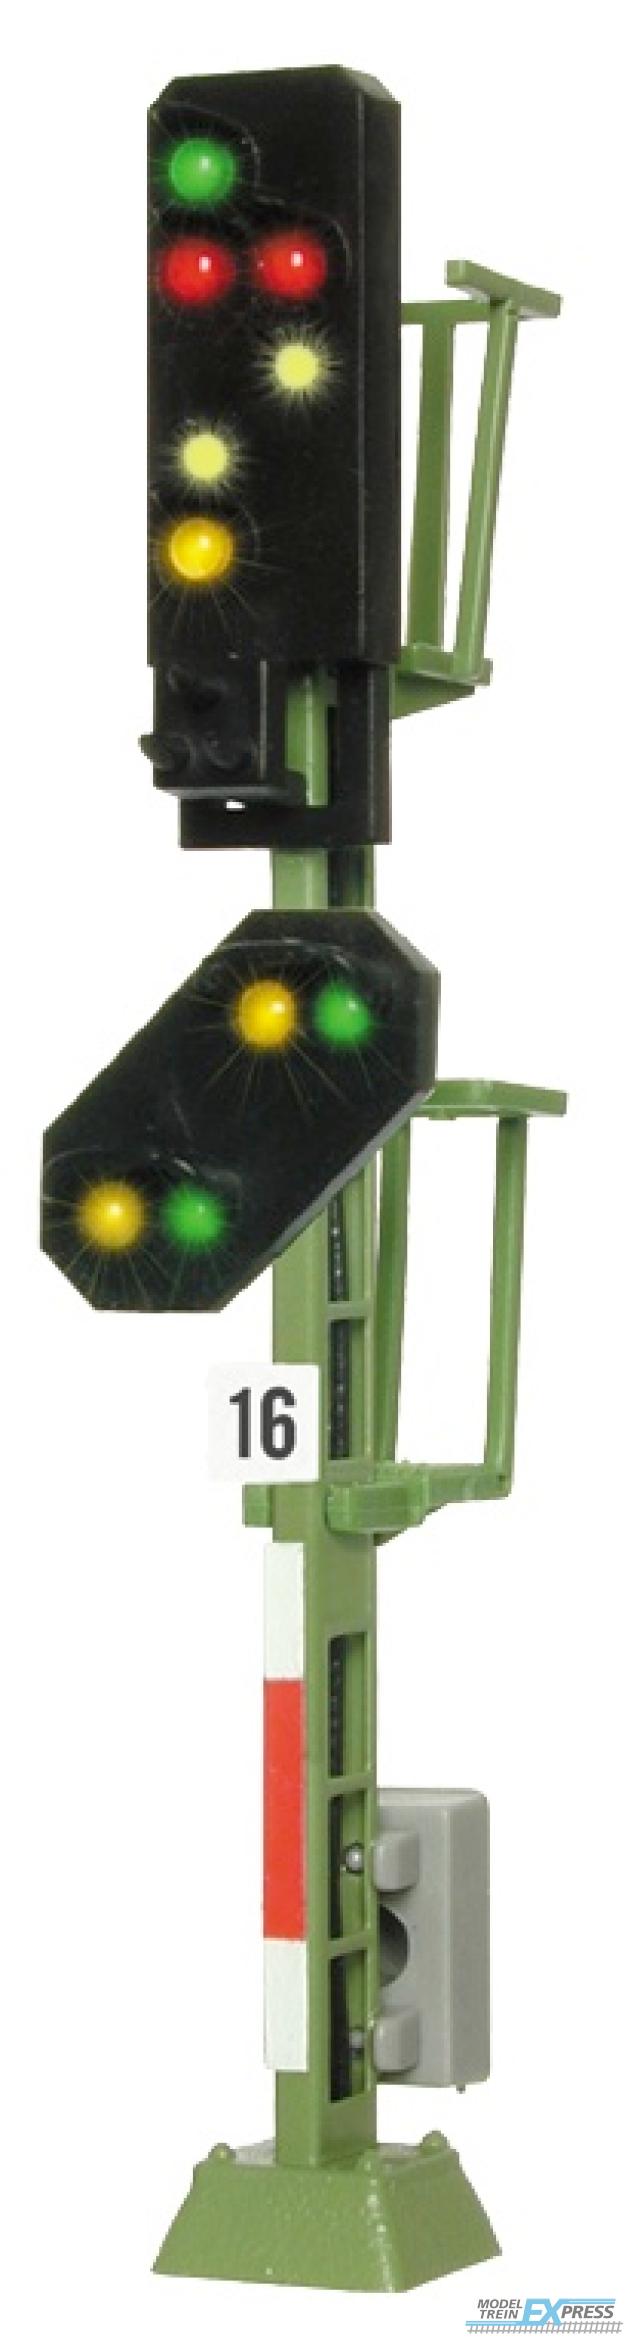 Viessmann 4916 TT Licht-Ausfahrsignal mit Vorsignal